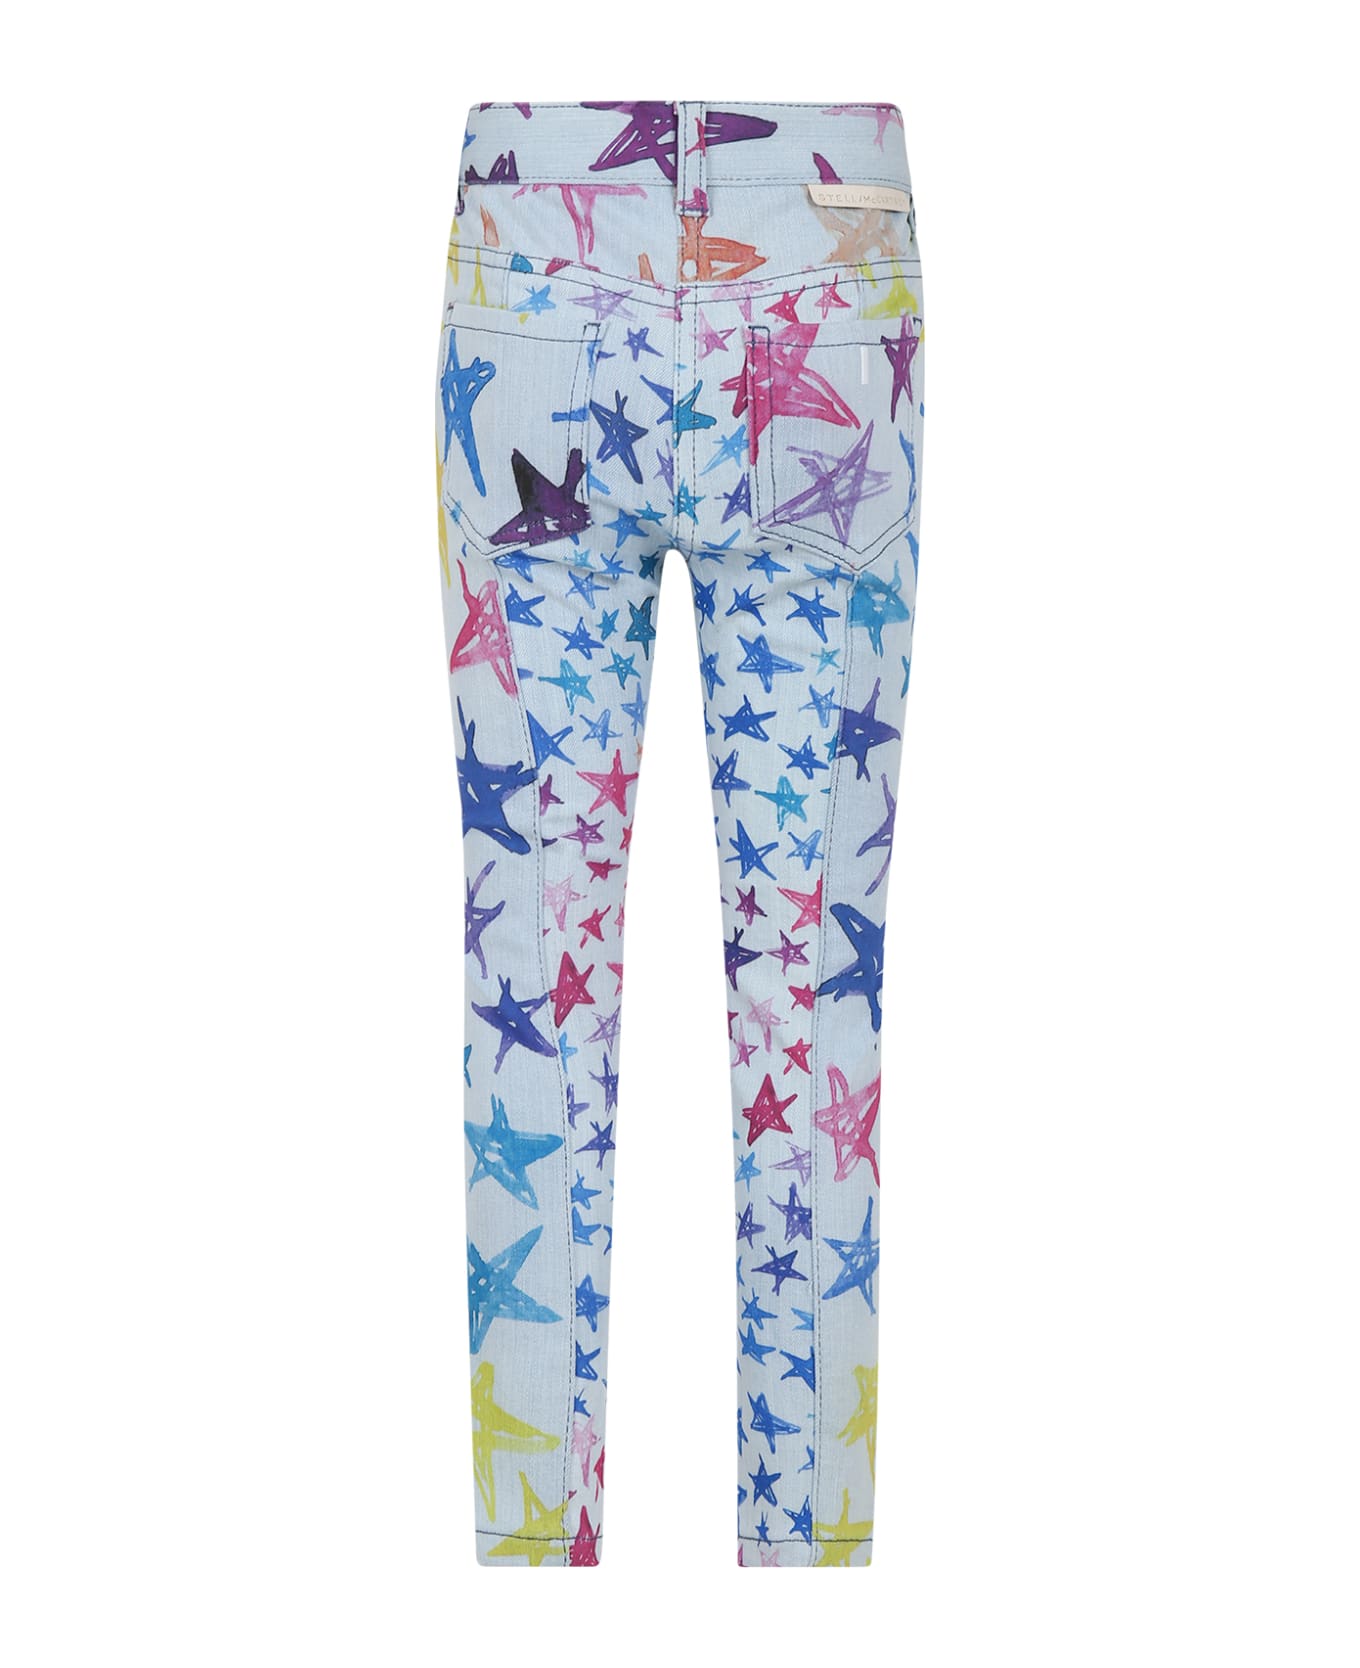 Stella McCartney Kids Light Blue Jeans For Girl With Stars Print - Denim ボトムス